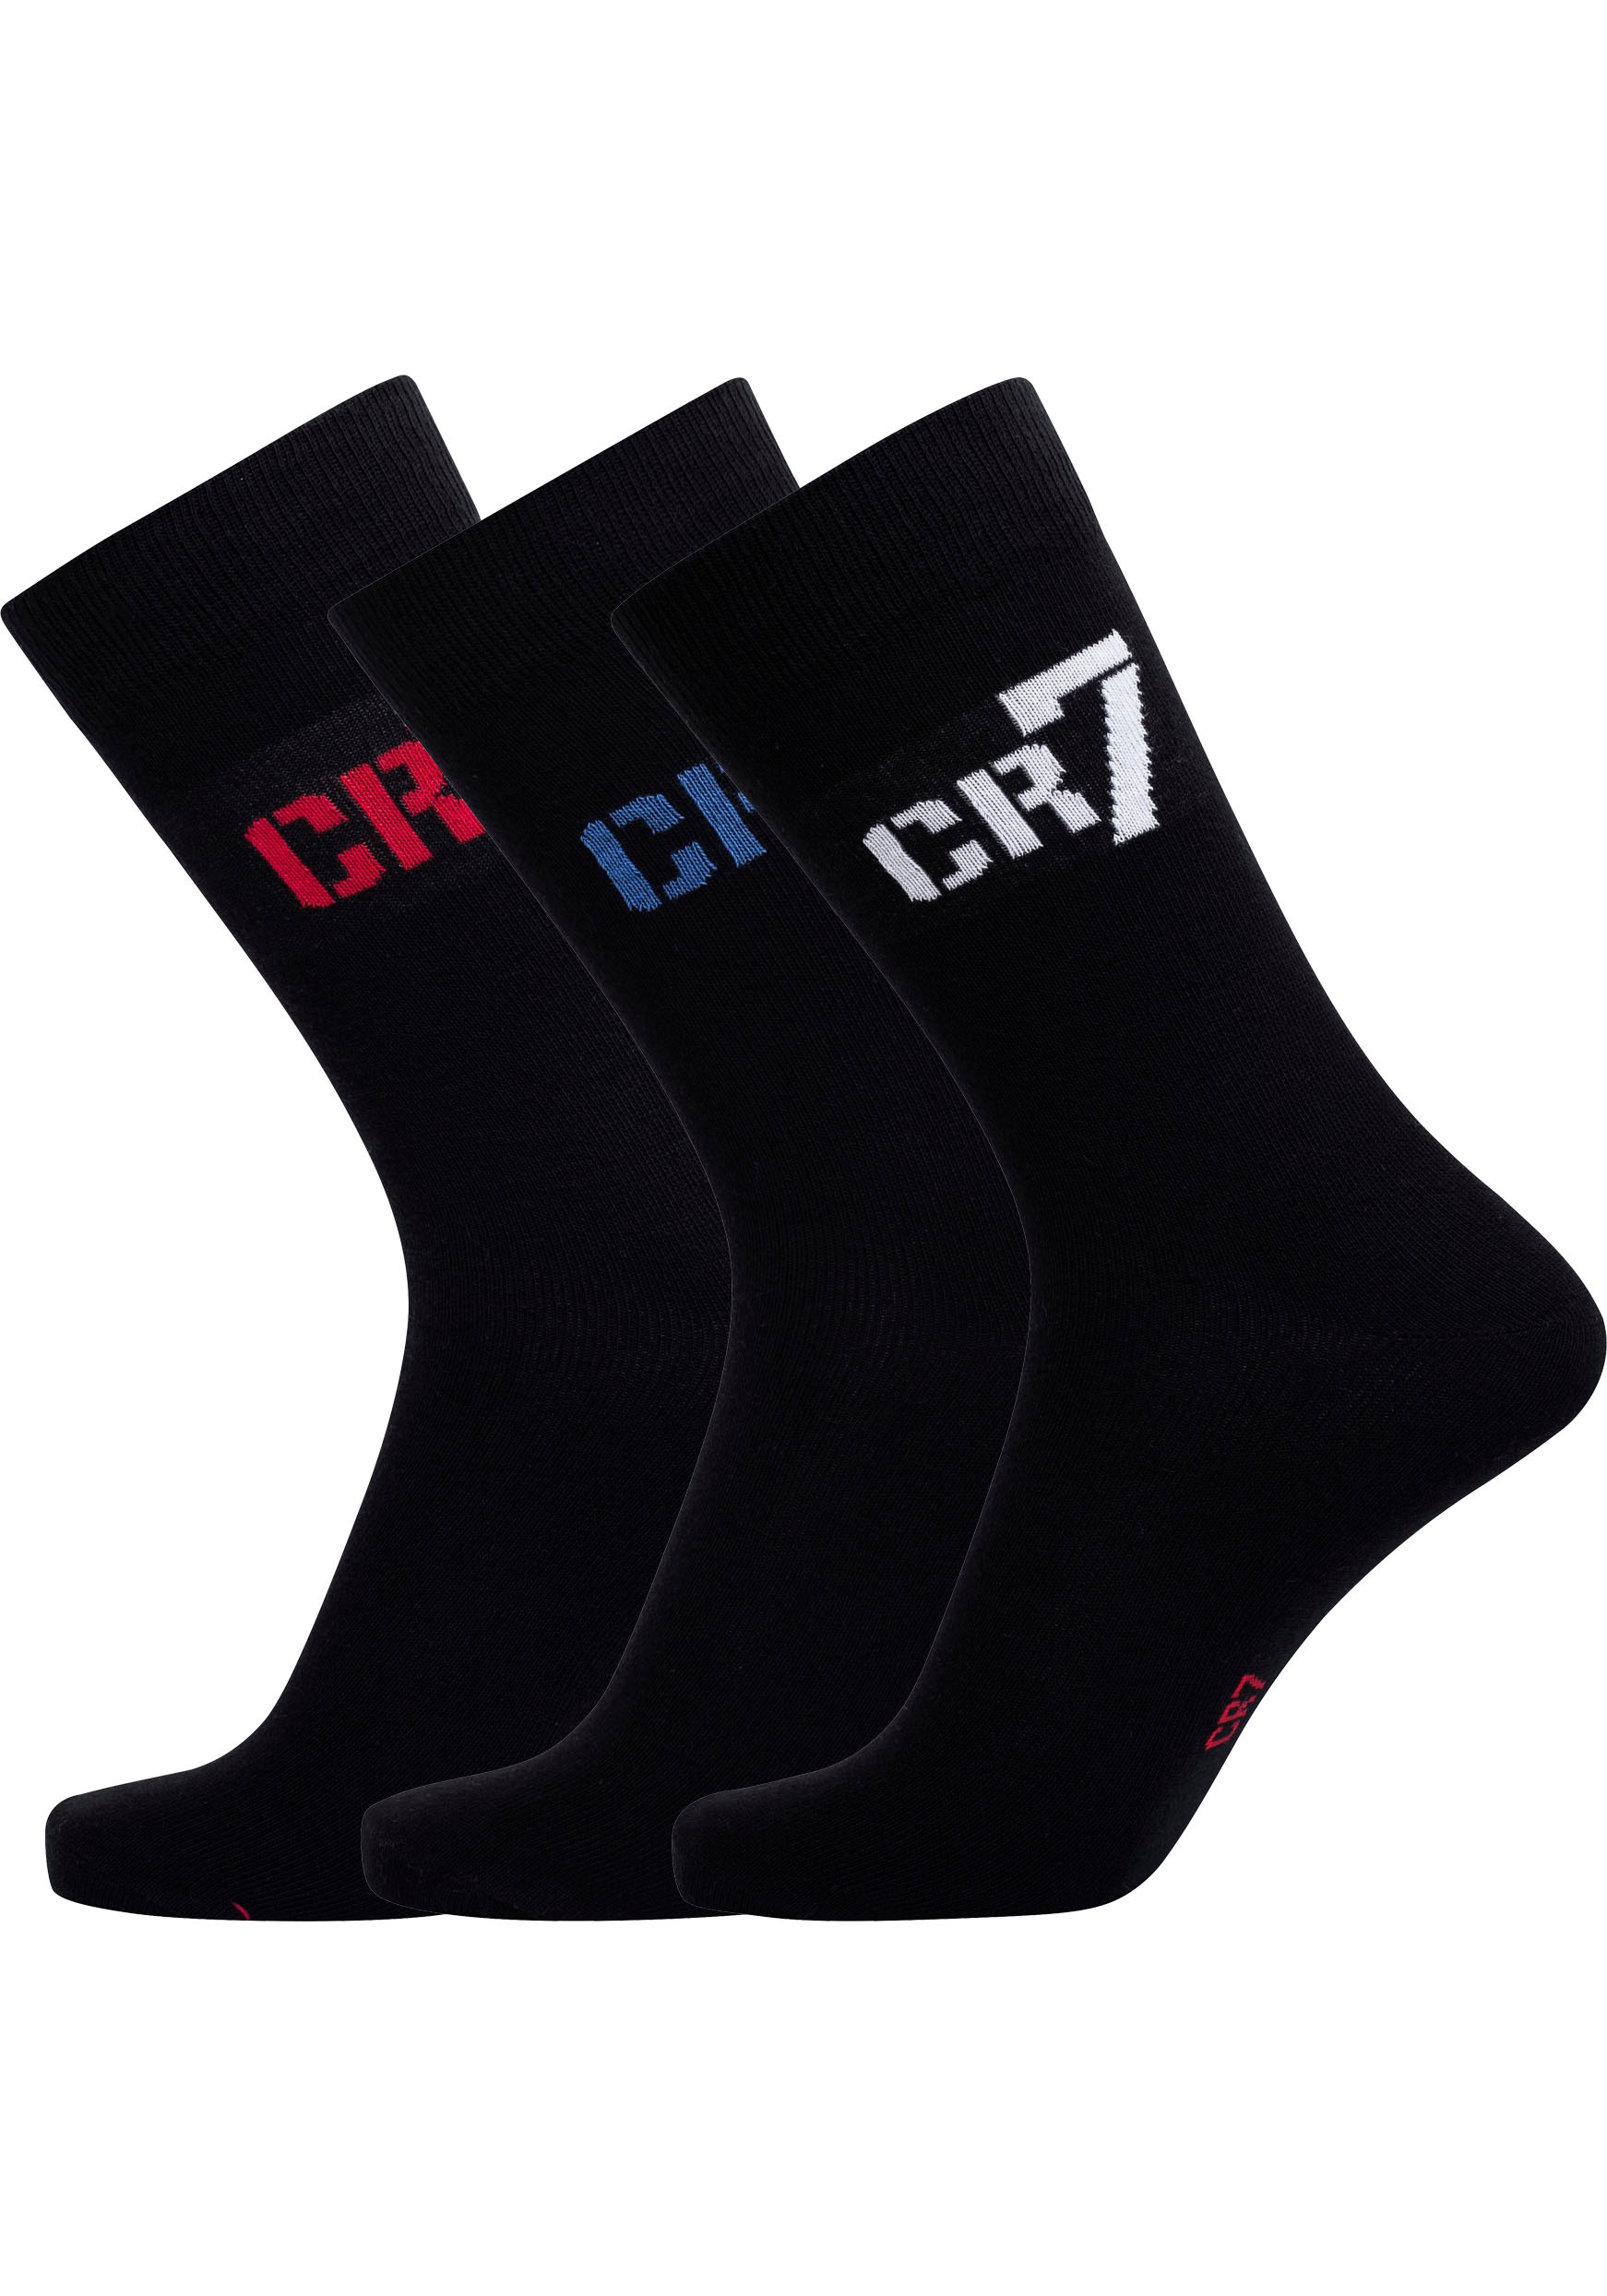 CR7 Socken (2 poros) su Logo an der Seite